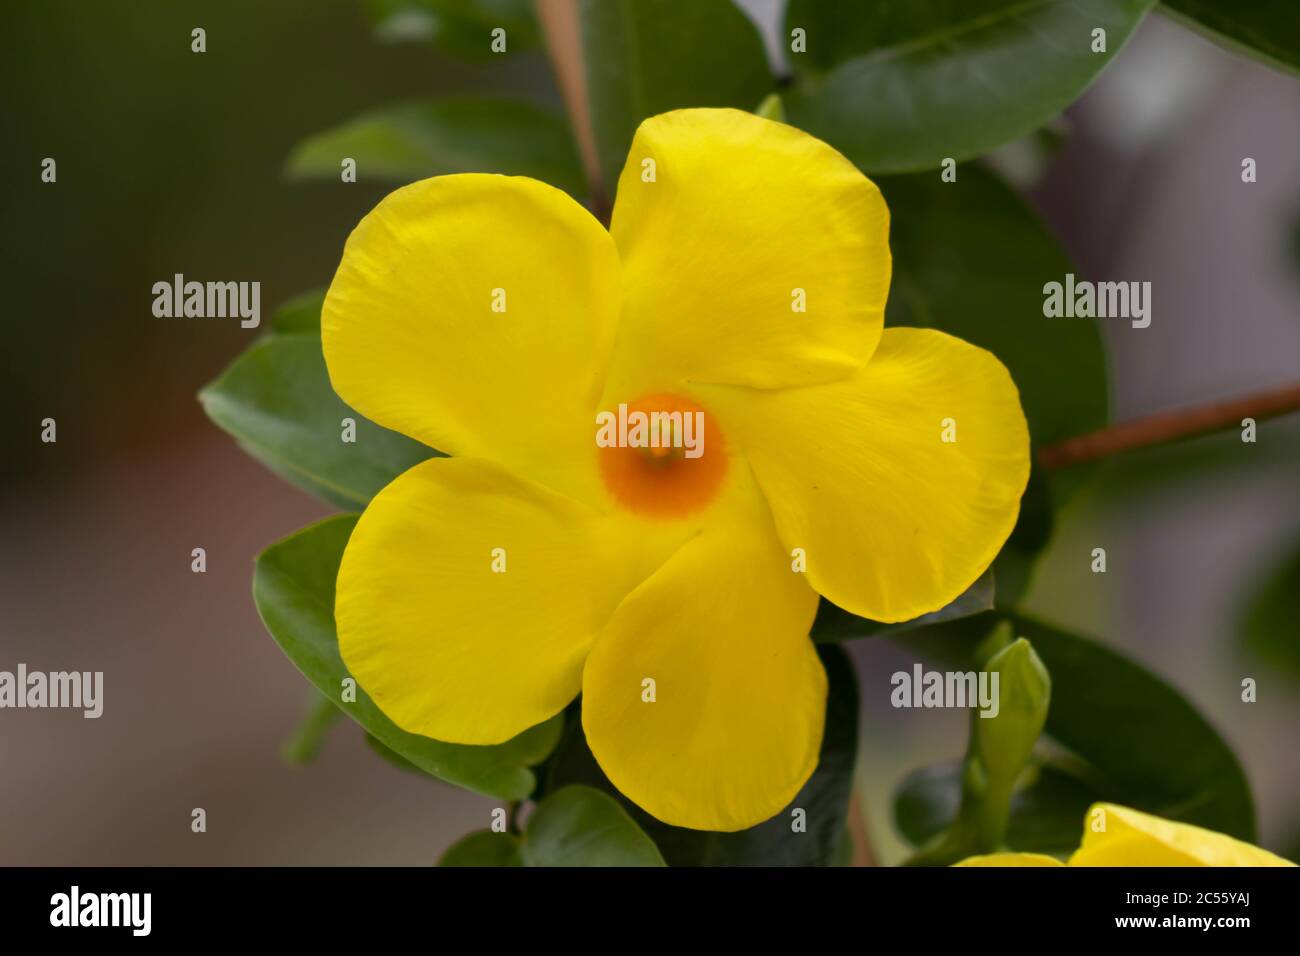 Closeup shot of a yellow rocktrumpet flower in a garden Stock Photo